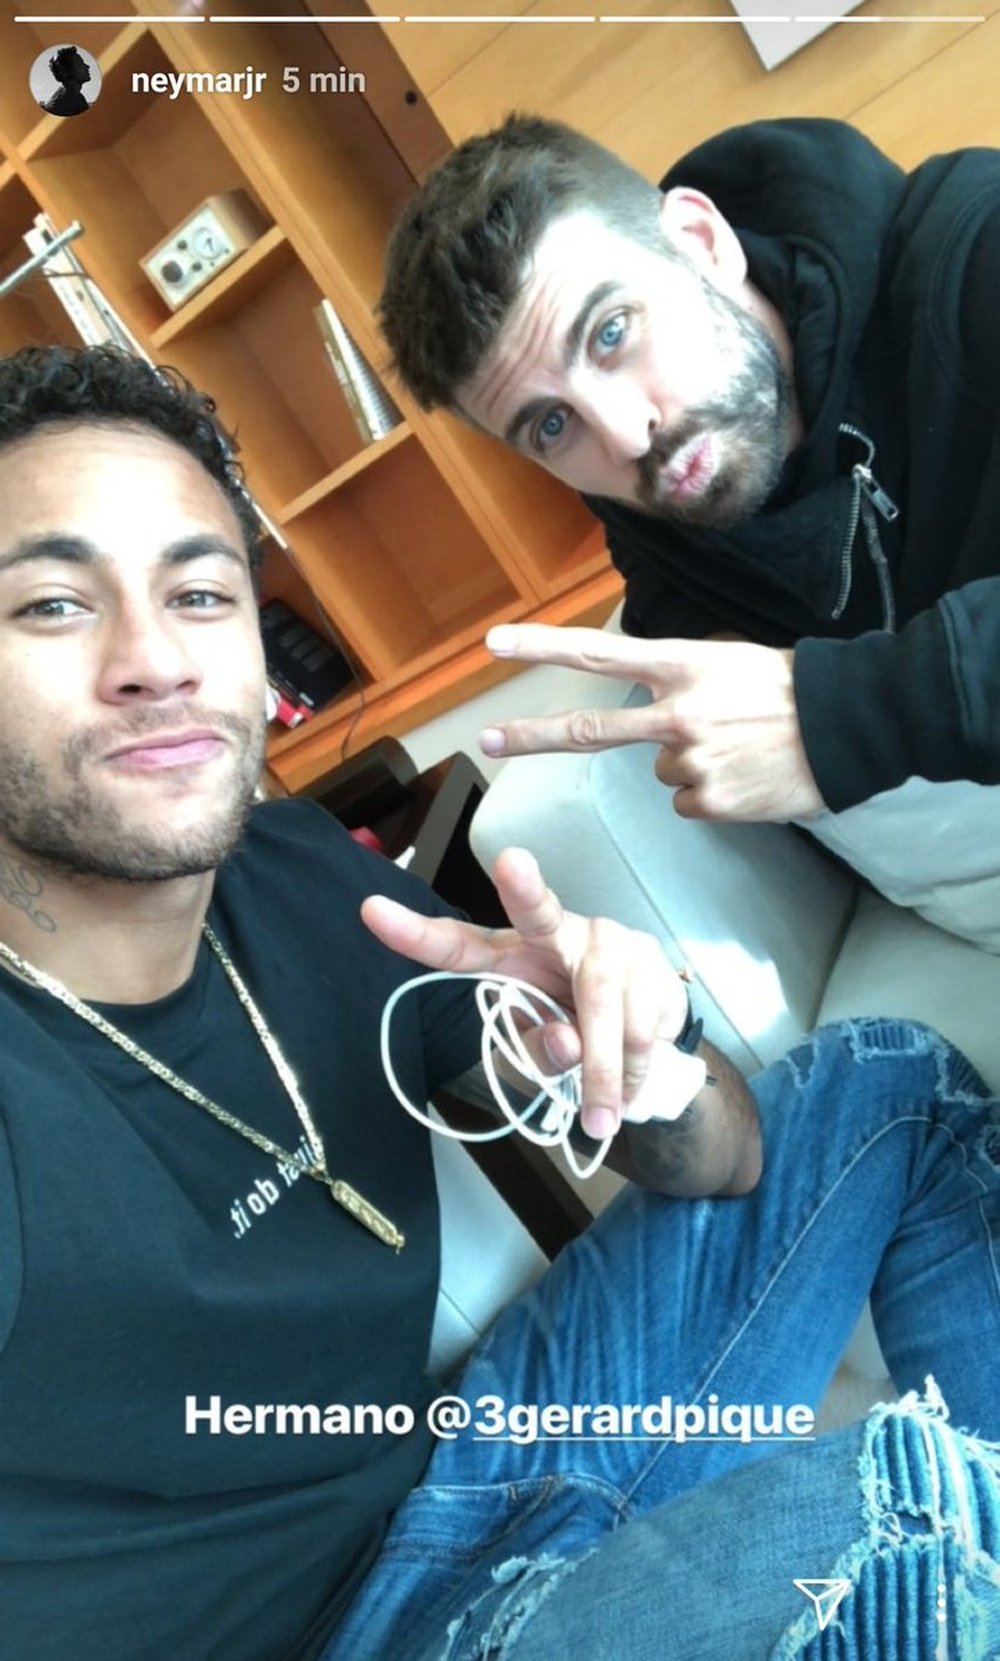 Neymar y Piqué, juntos de nuevo. Neymarjr